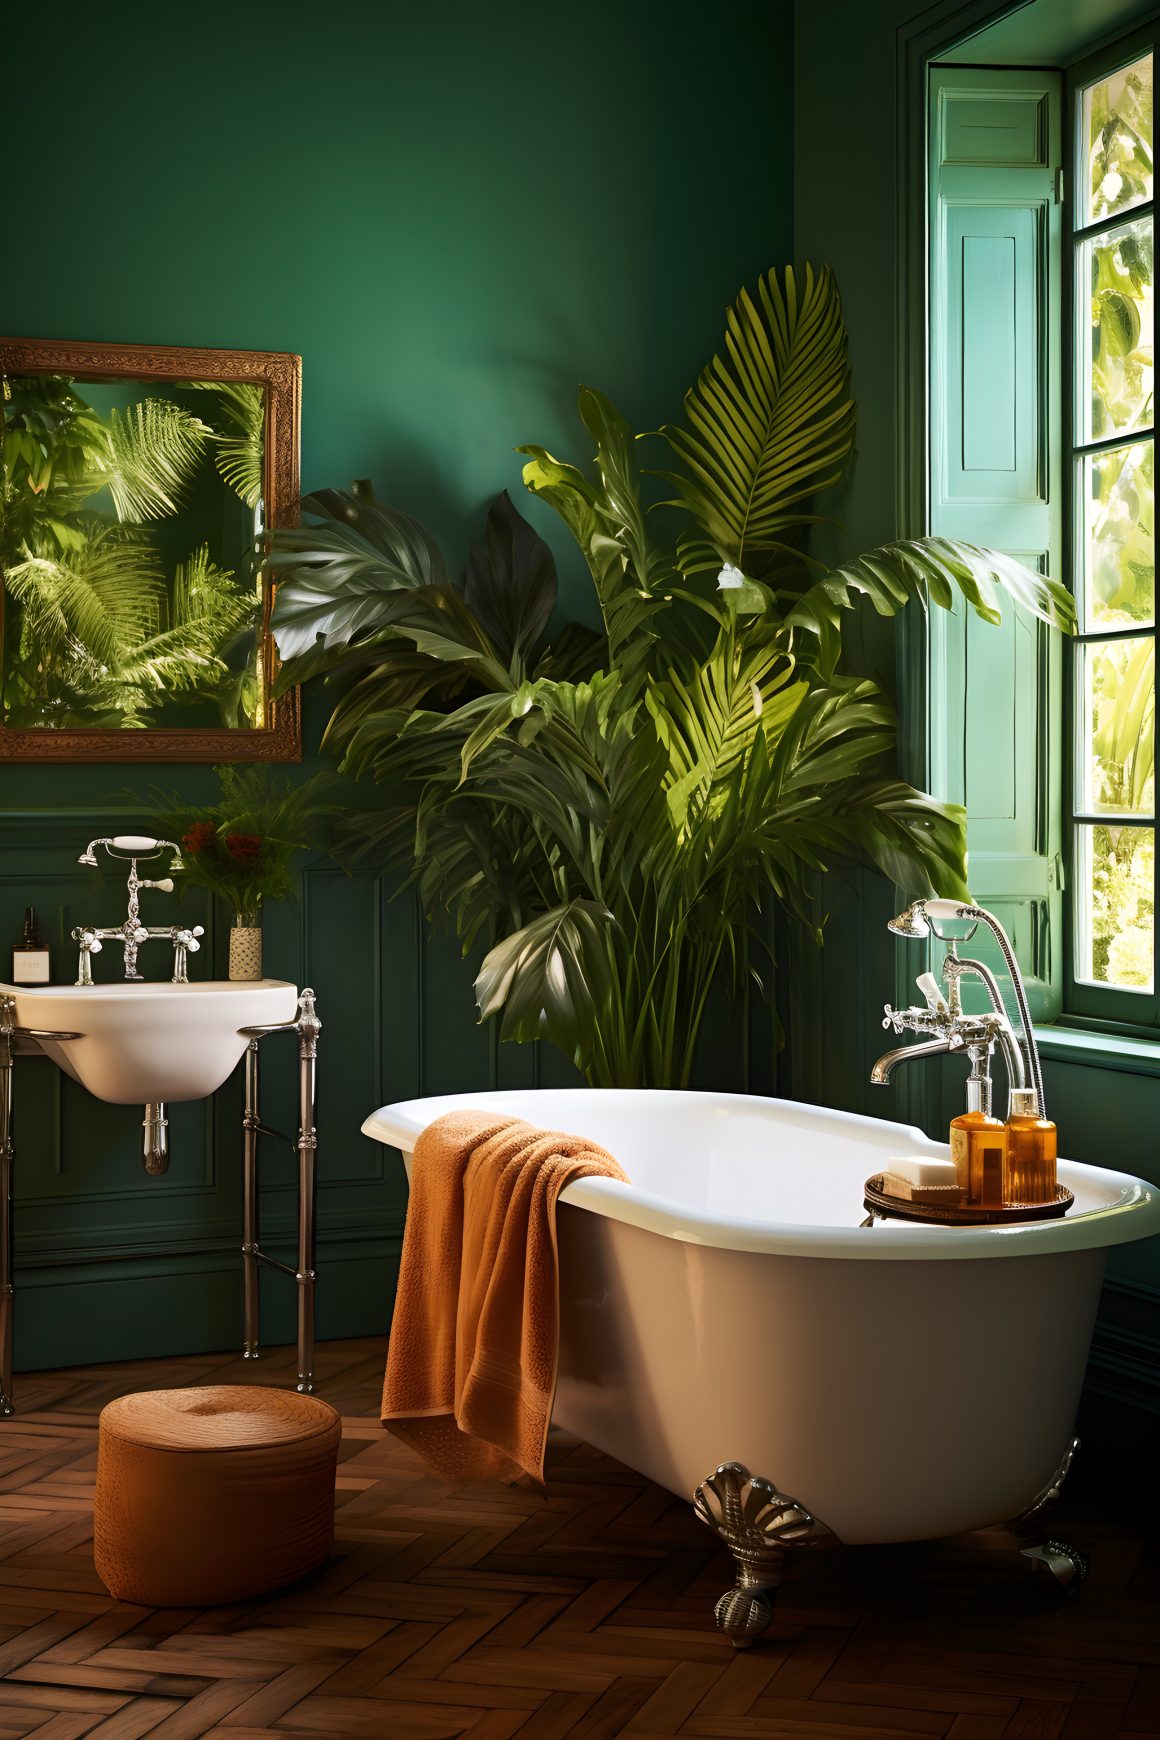 baignoire sur pieds avec des plantes tropicales luxuriantes et des accents verts et dorés